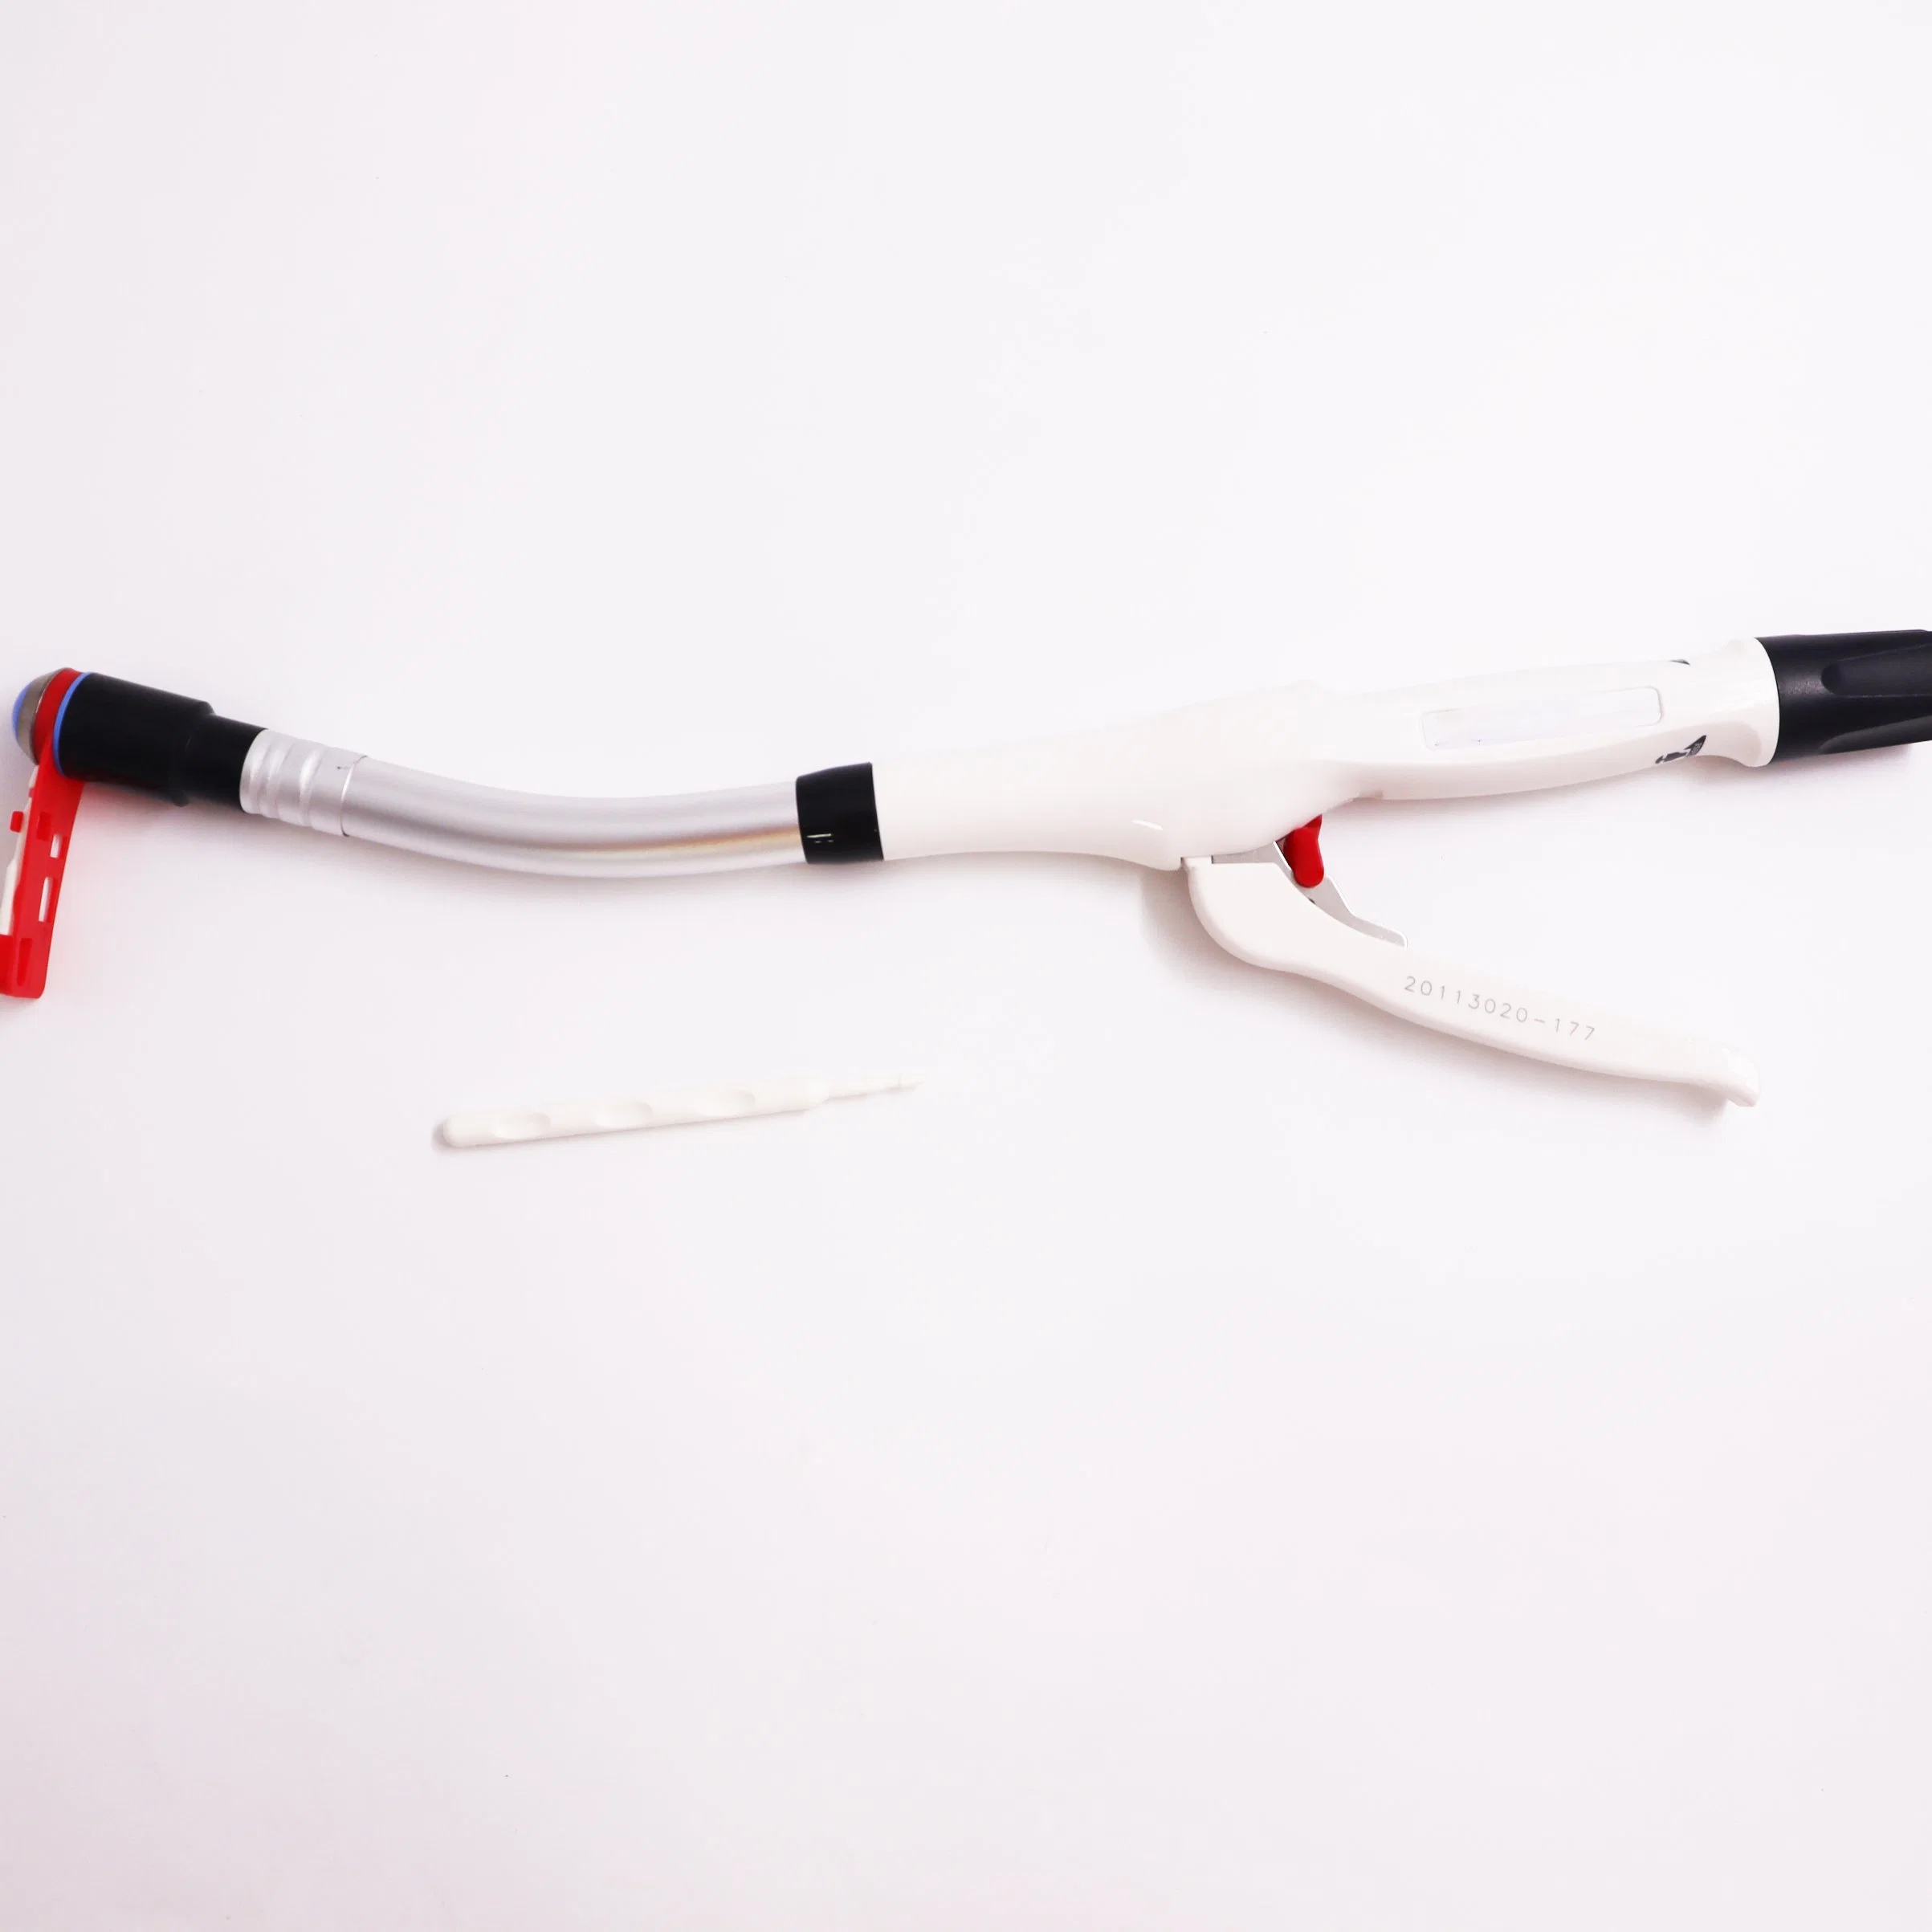 Одноразовый круглый сшиватель Профессиональный производитель эндоскопическое хирургическое устройство для пищеварения Урочище